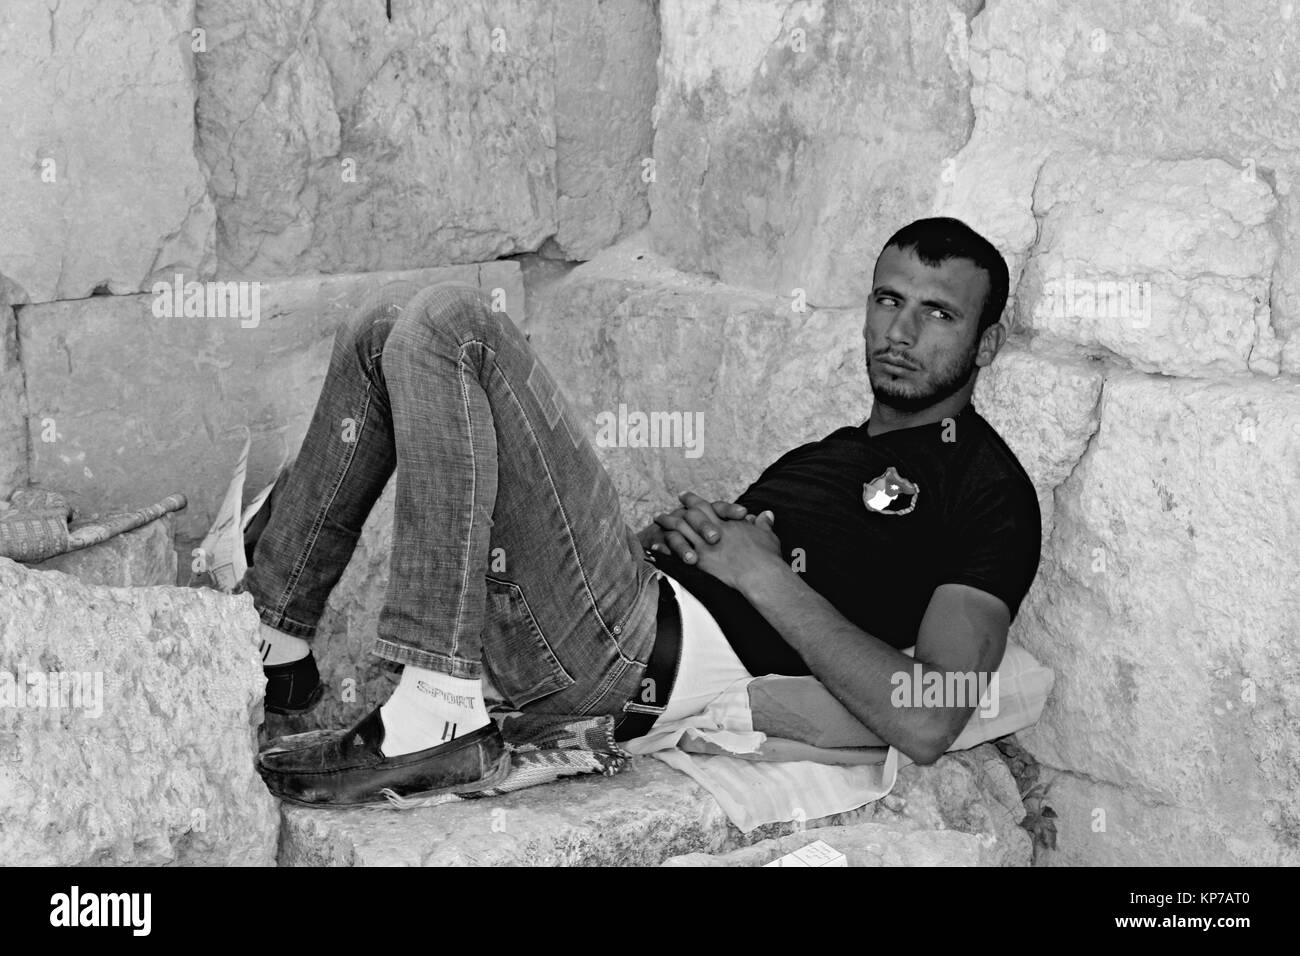 Homme fatigué à Jerash - 21/04/2017 - Jordanie / Amman - Sguardi Aridi par Ali Raffaele Matar tourné en avril 2017 - les yeux sans espoir d'un jeune garçon arabe réticente Banque D'Images